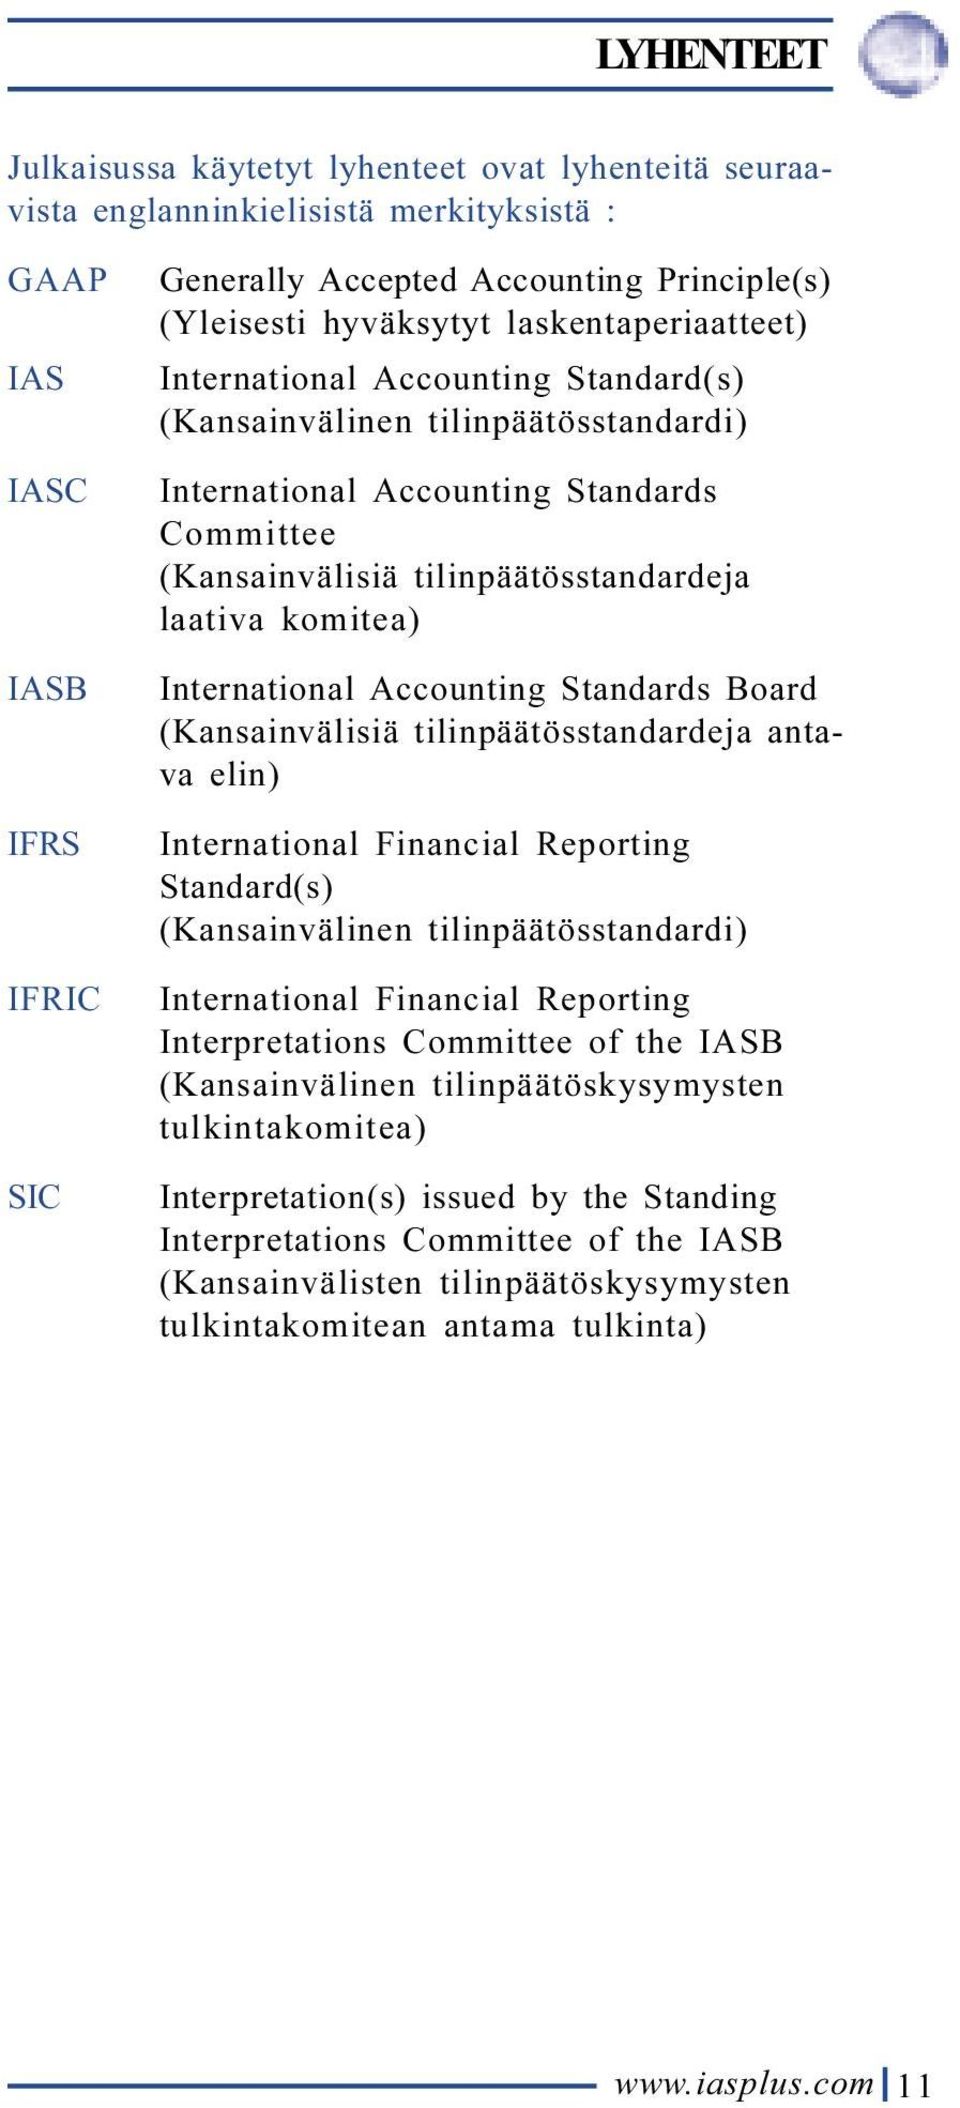 komitea) International Accounting Standards Board (Kansainvälisiä tilinpäätösstandardeja antava elin) International Financial Reporting Standard(s) (Kansainvälinen tilinpäätösstandardi) International